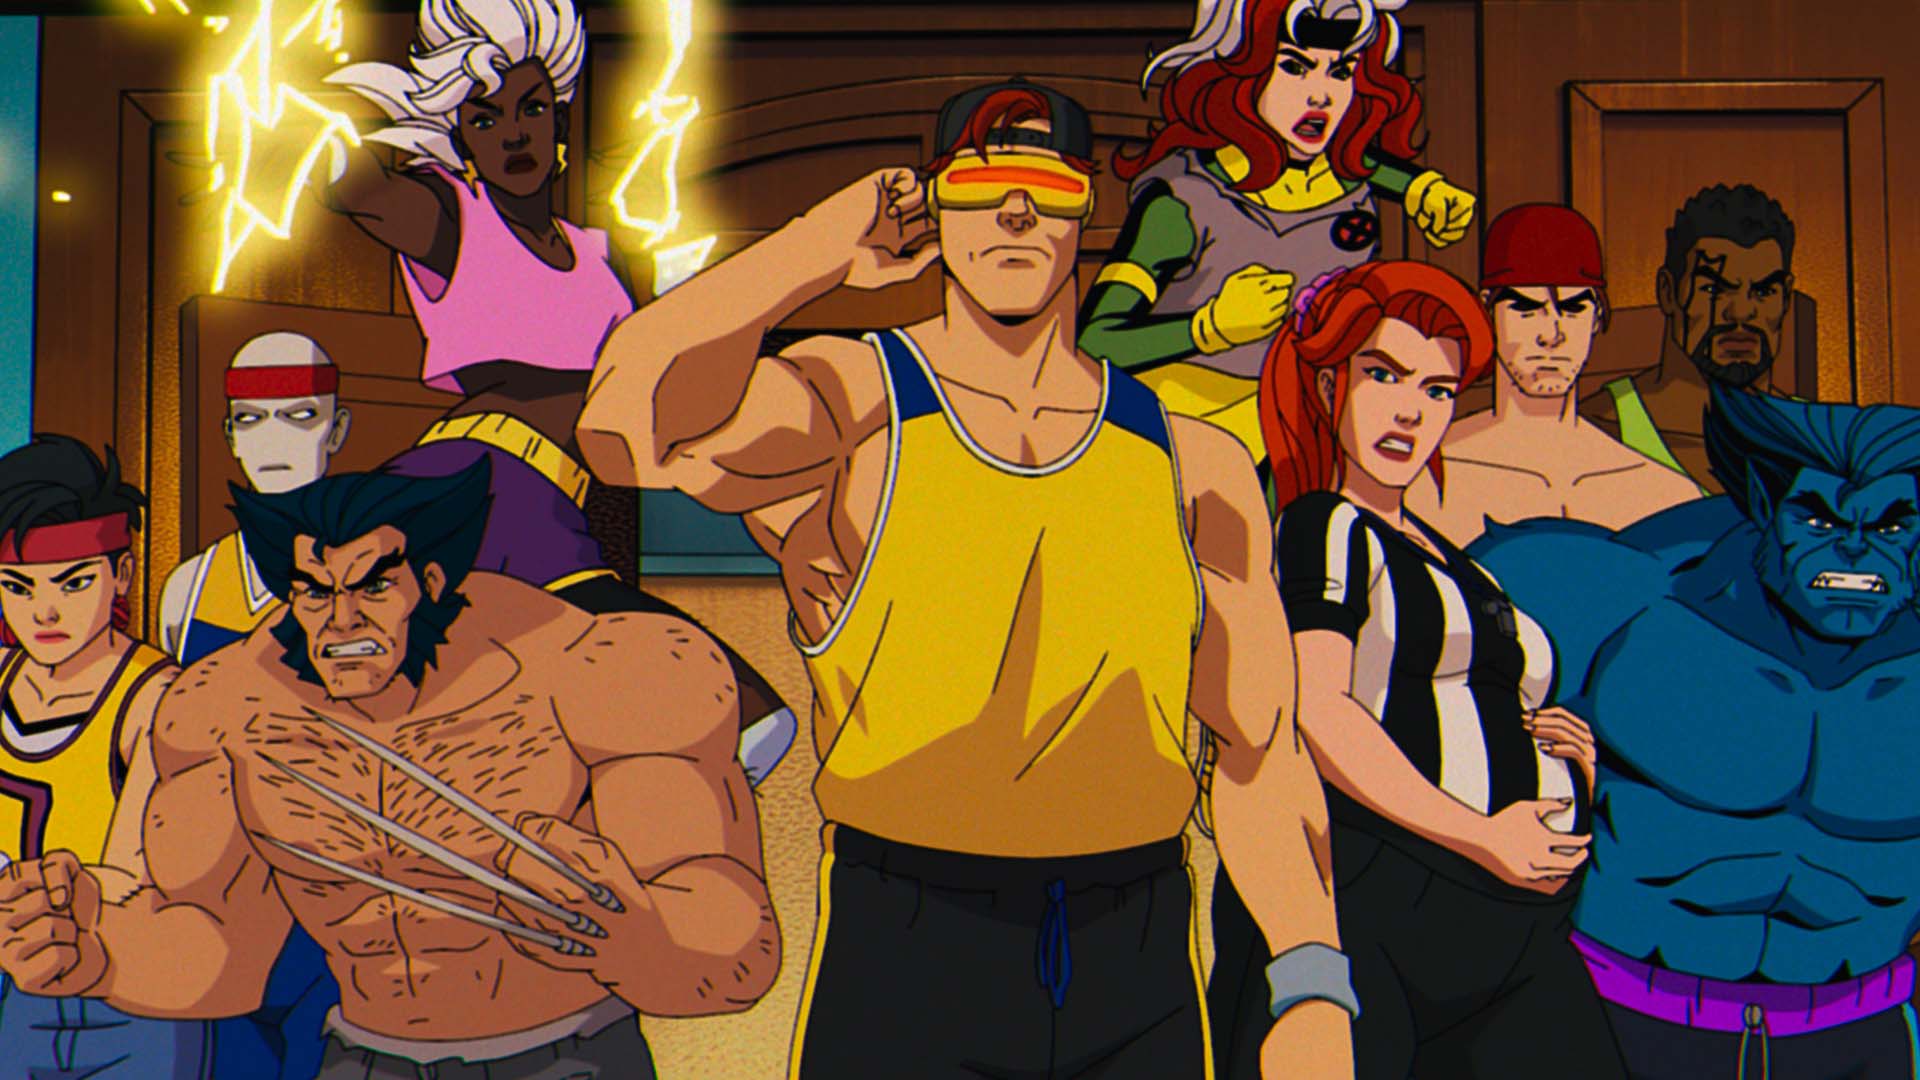 X-Men ’97, ecco il trailer della serie animata: le nuove avventure dei mutanti